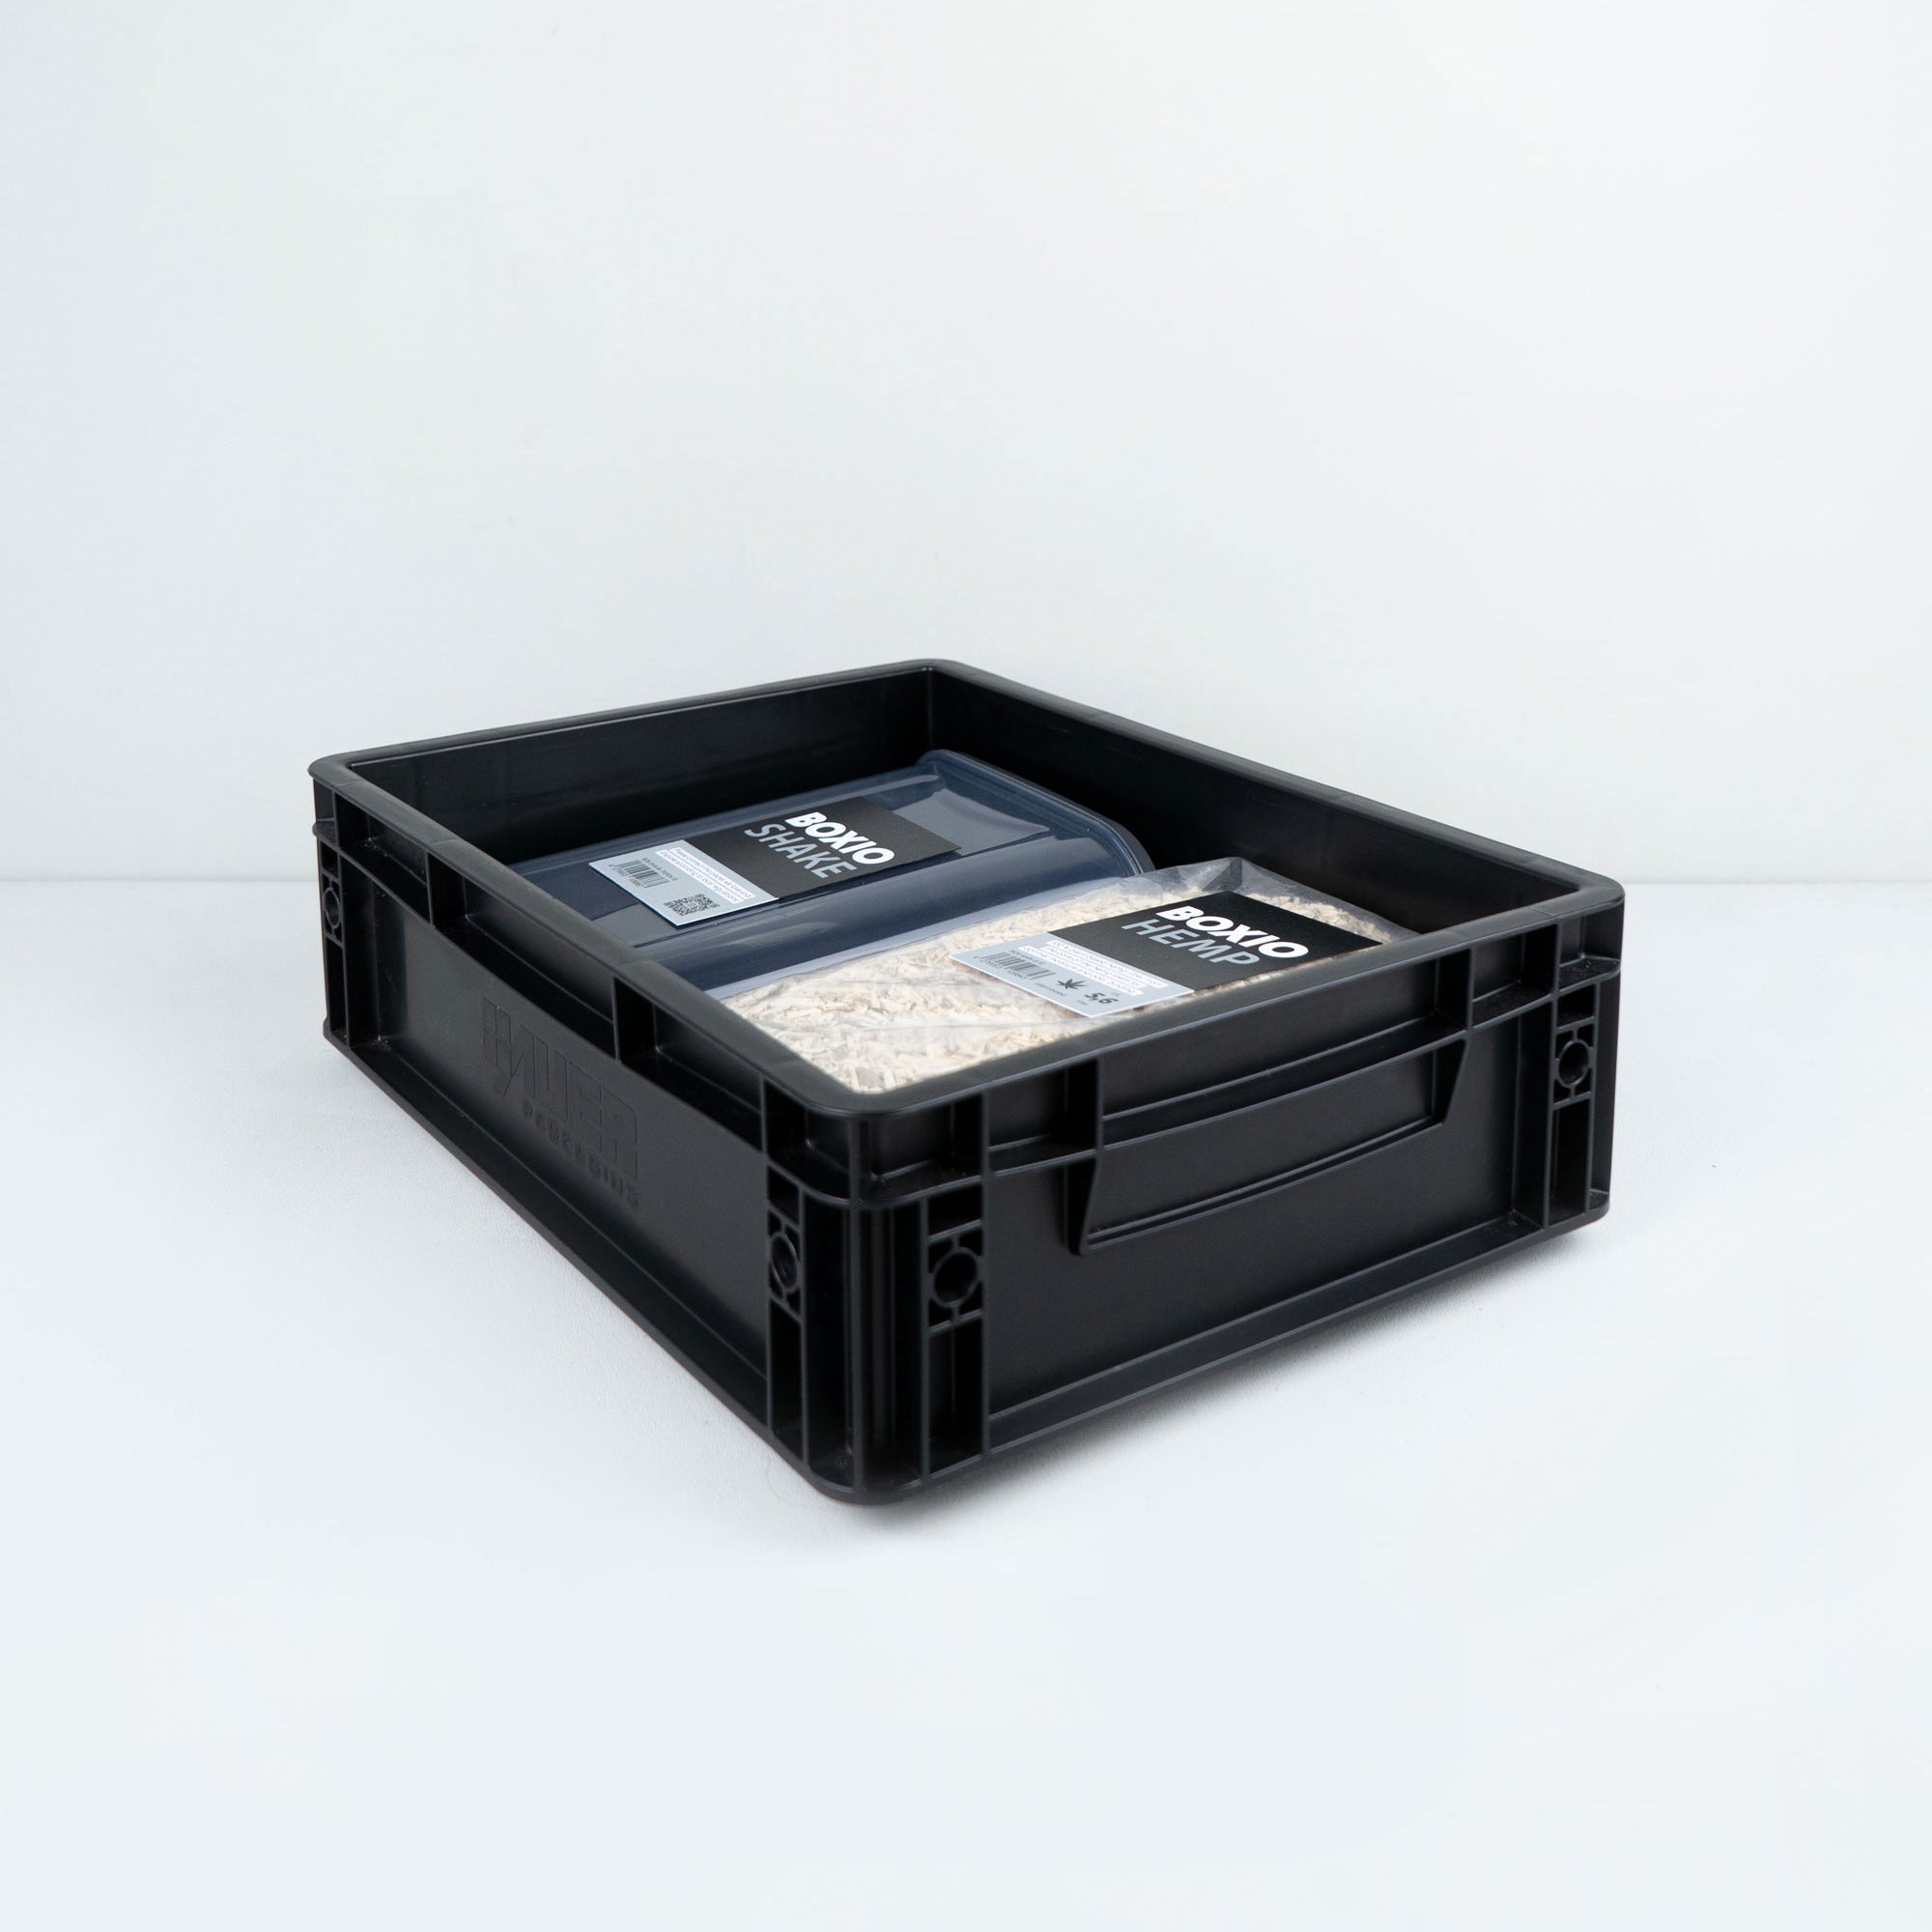 BOXIO - COOL : ta glacière au format eurobox - BOXIO Shop